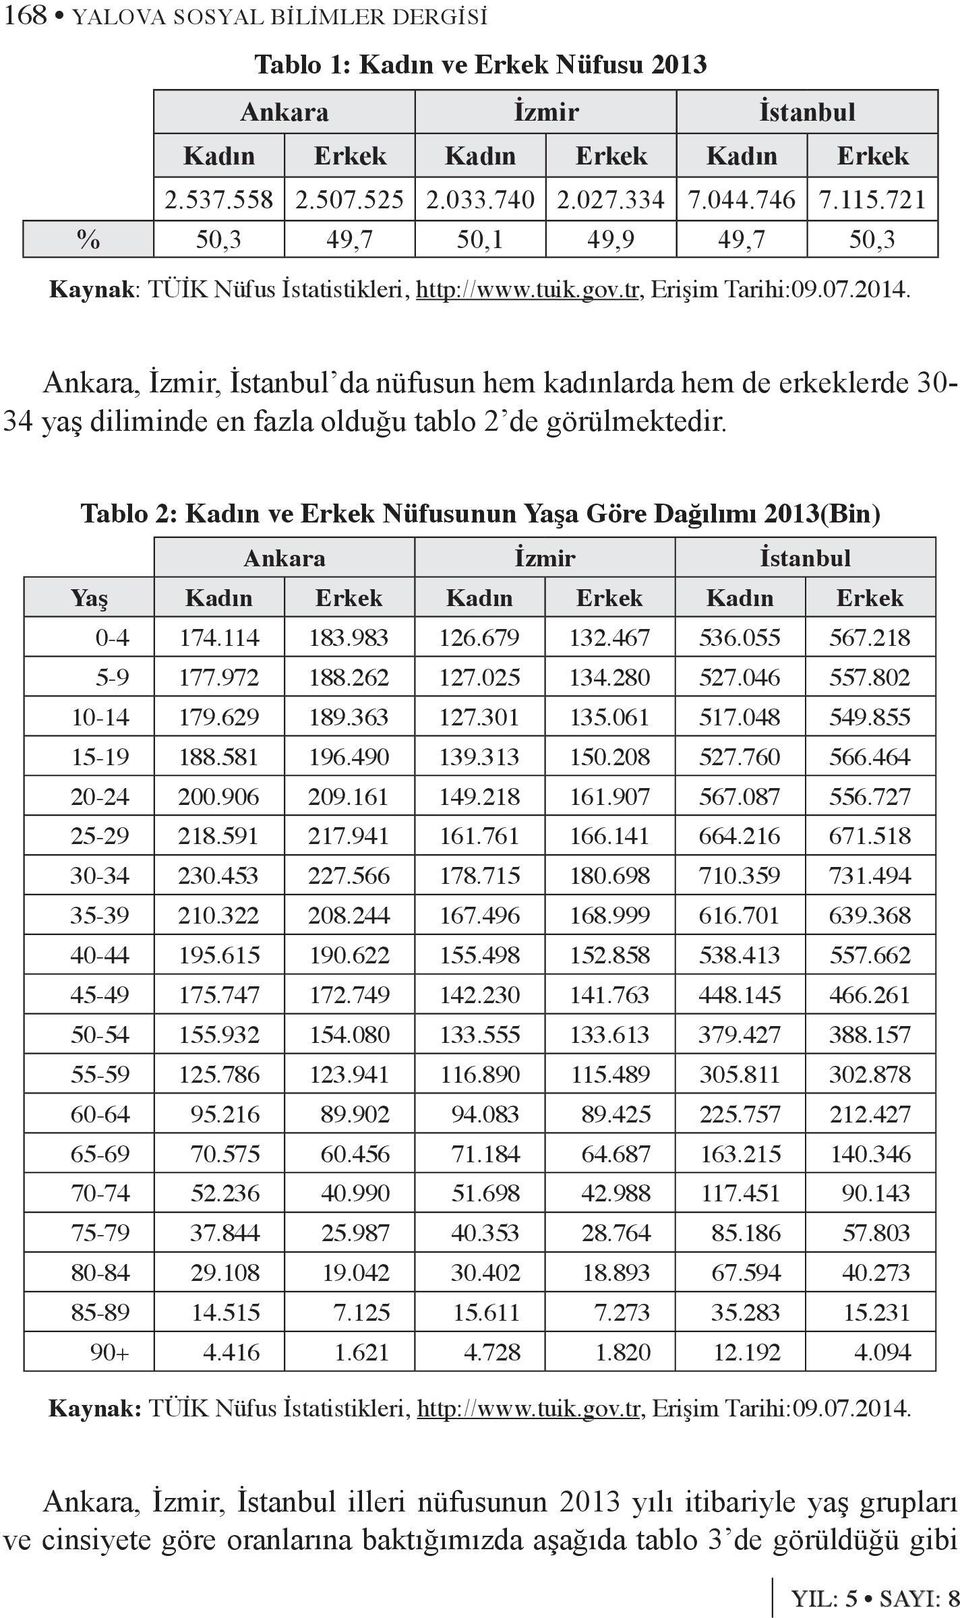 Ankara, İzmir, İstanbul da nüfusun hem kadınlarda hem de erkeklerde 30-34 yaş diliminde en fazla olduğu tablo 2 de görülmektedir.